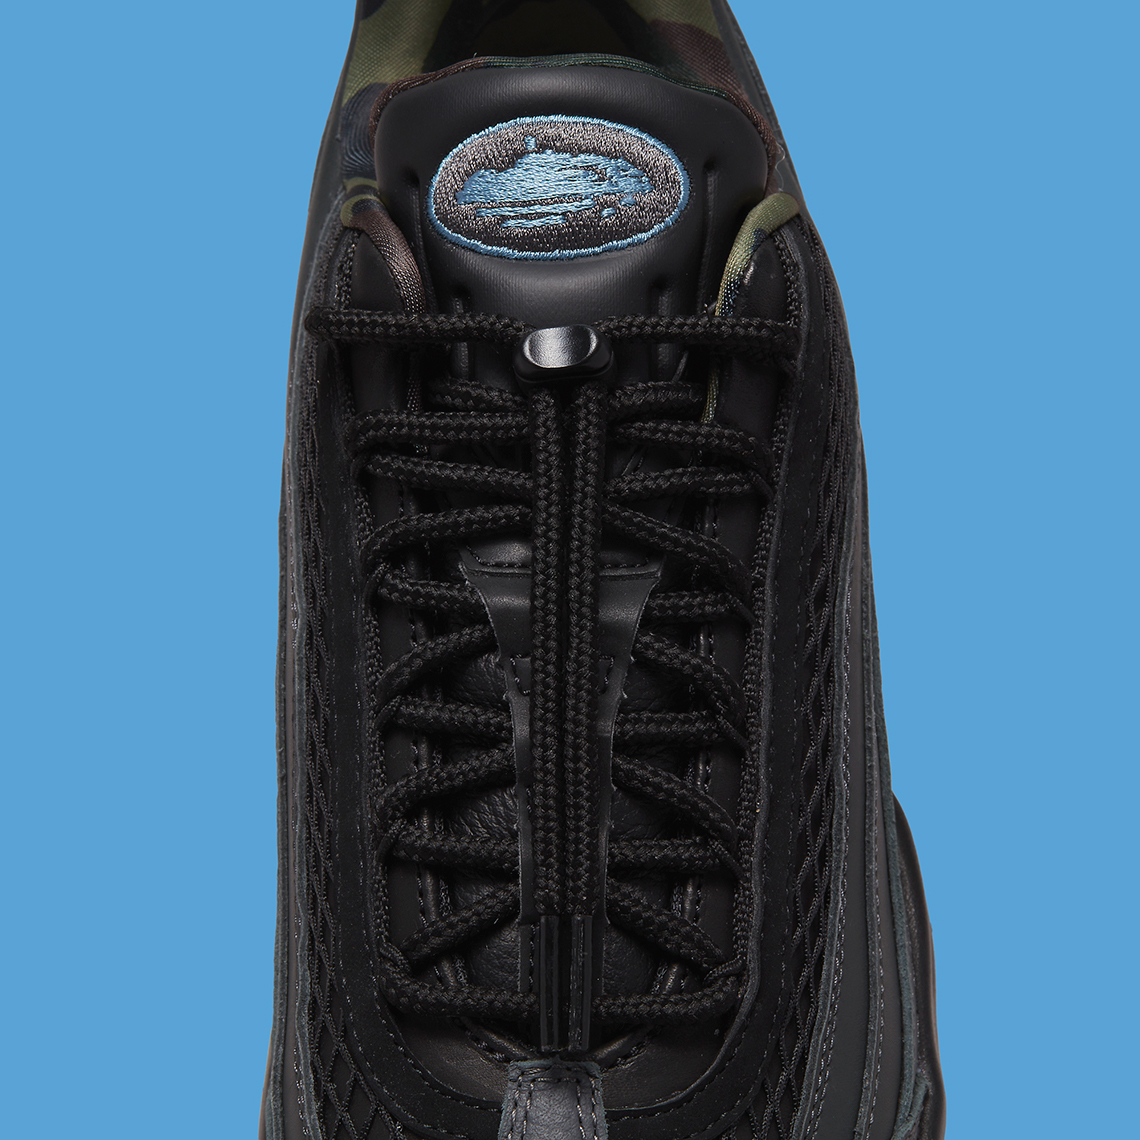 Trois Corteiz x Nike Air Max 95 dévoilées - Le Site de la Sneaker